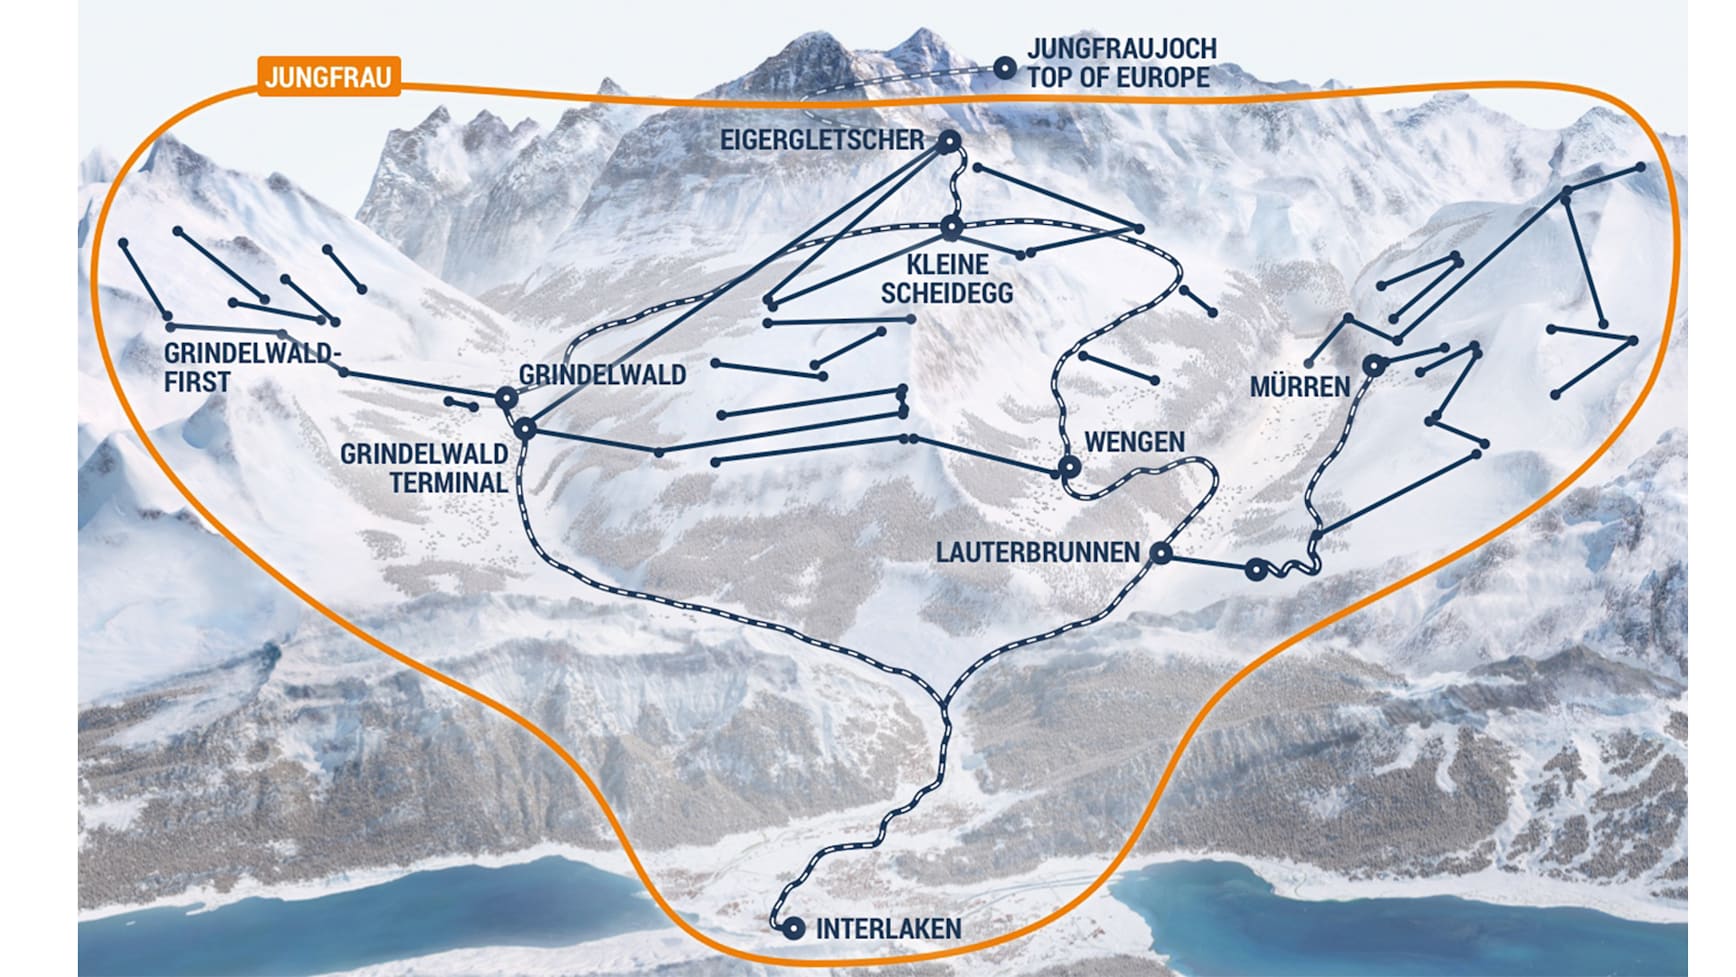 Gueltigkeitsbereich Jungfrau Ski Region